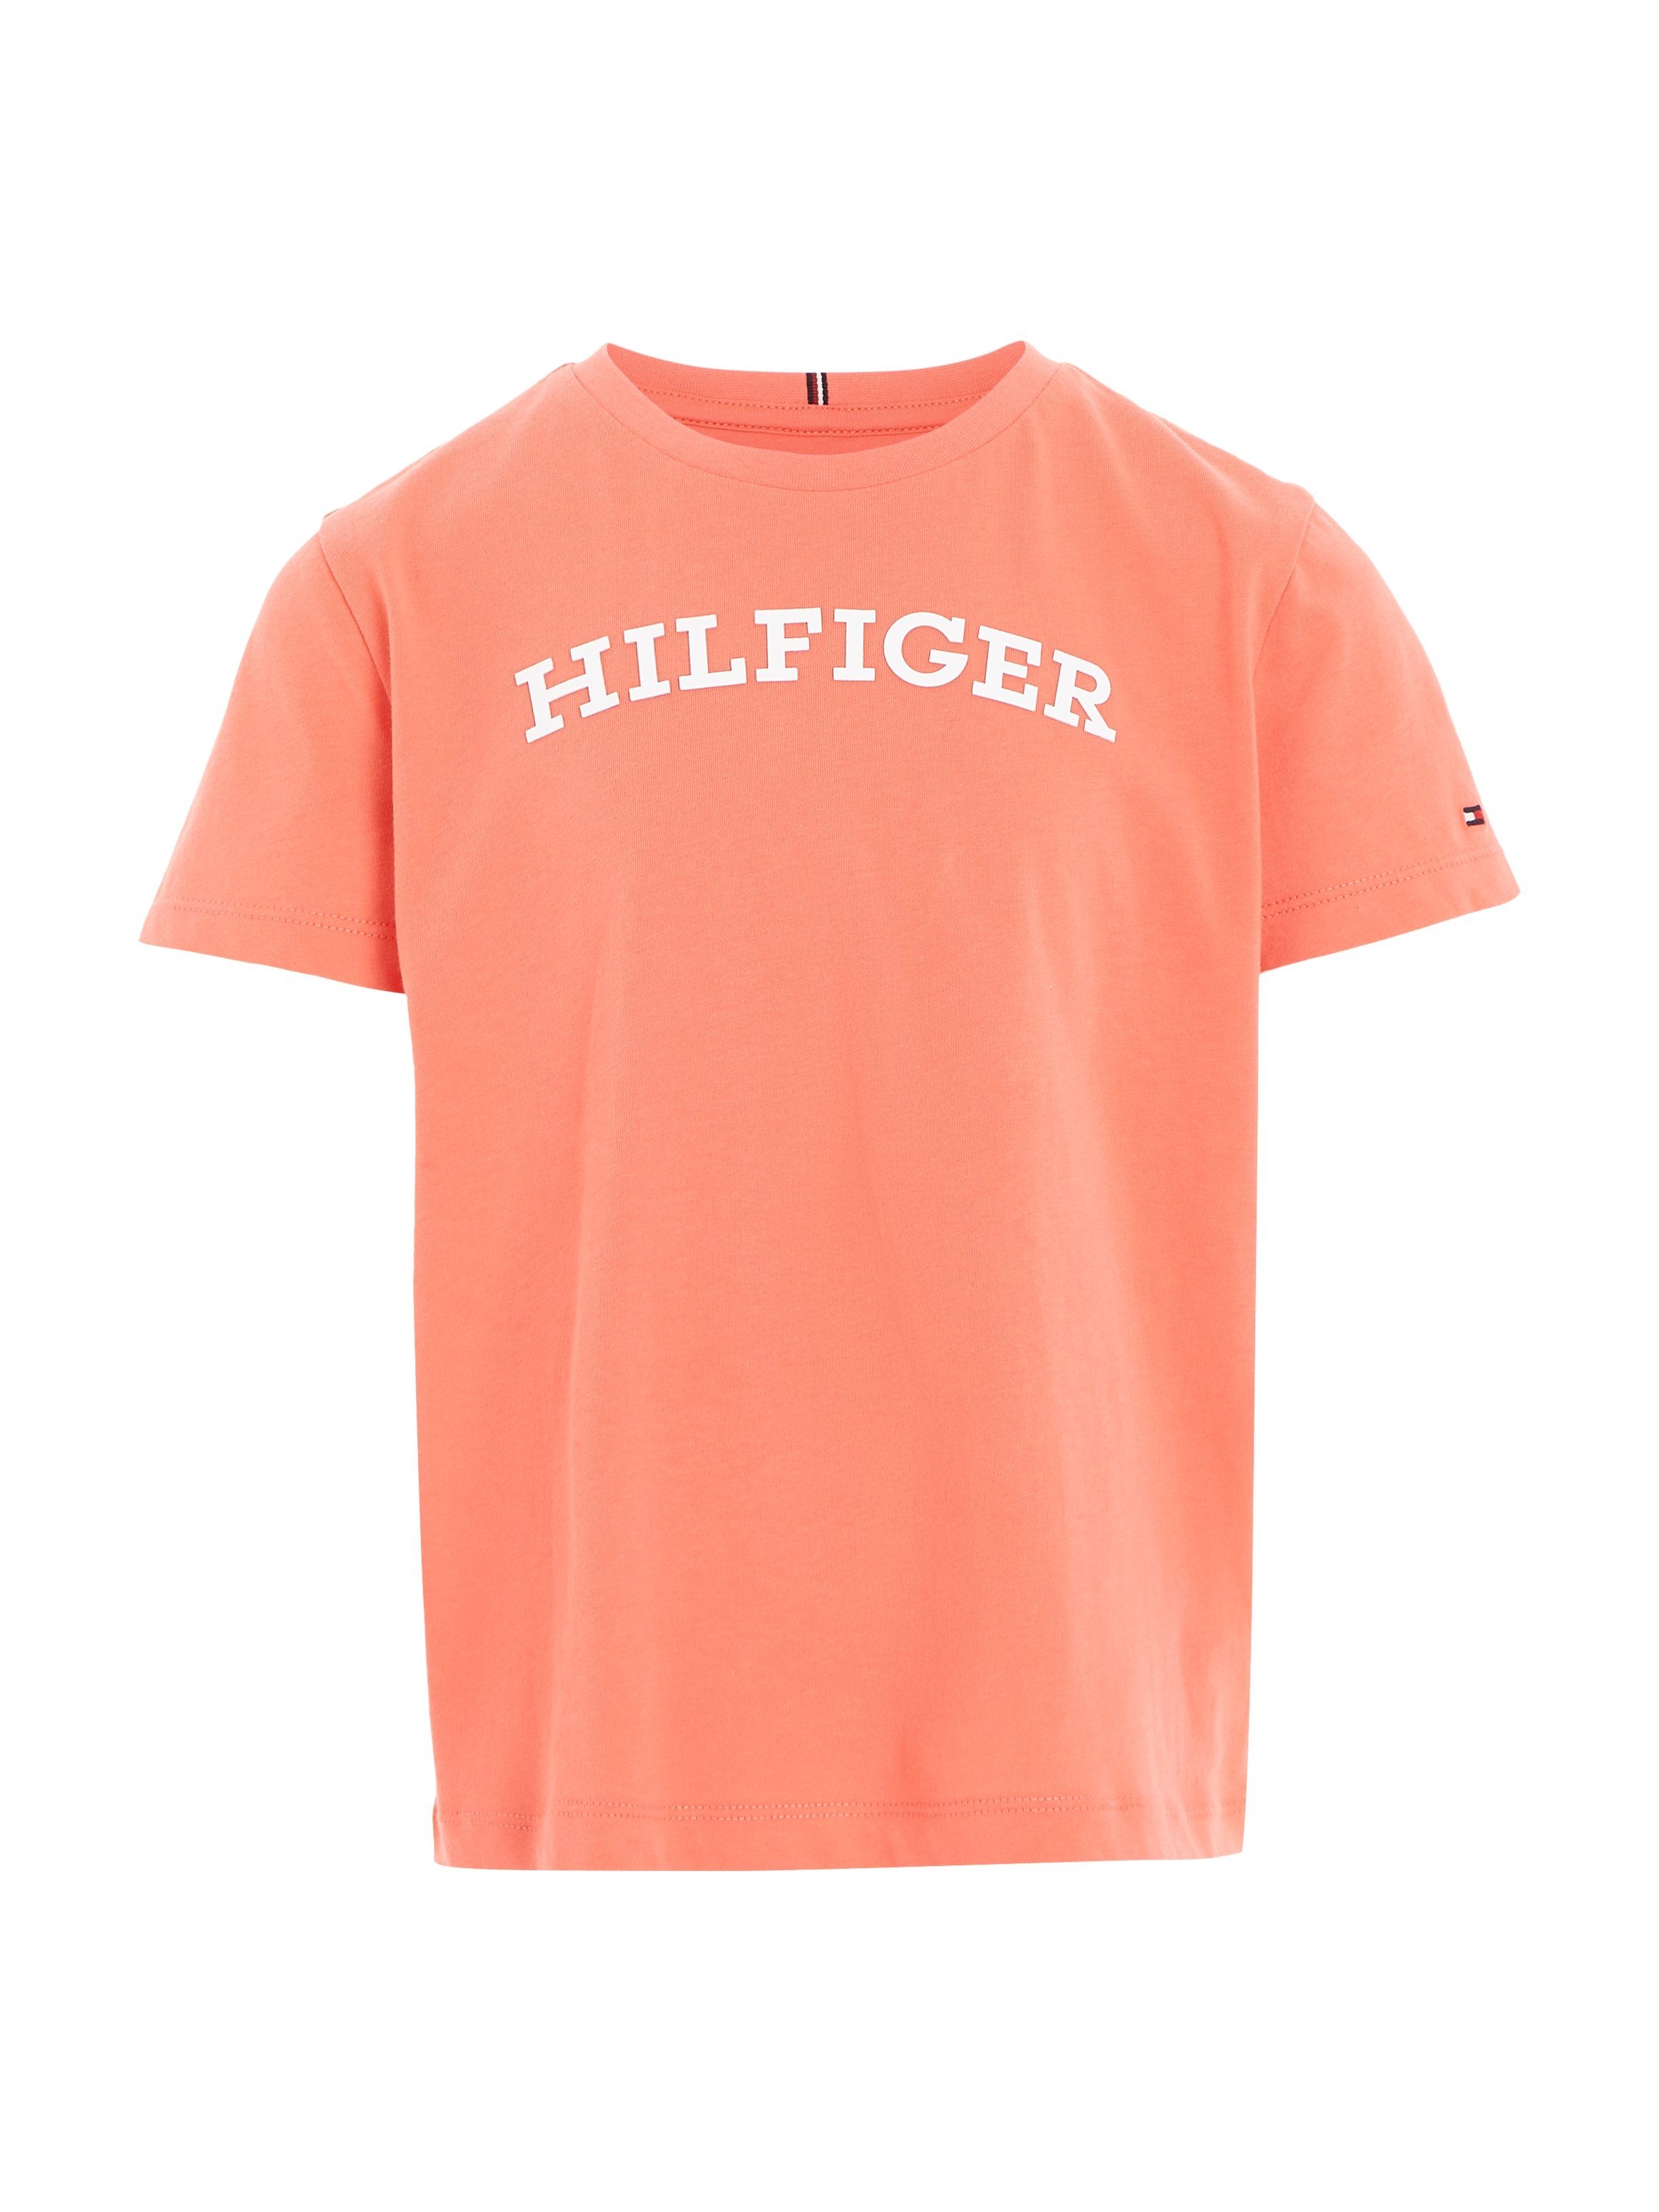 Tommy Hilfiger MONOTYPE TEE S/S Hilfiger-Logoschriftzug modischem koralle T-Shirt auf der mit Brust